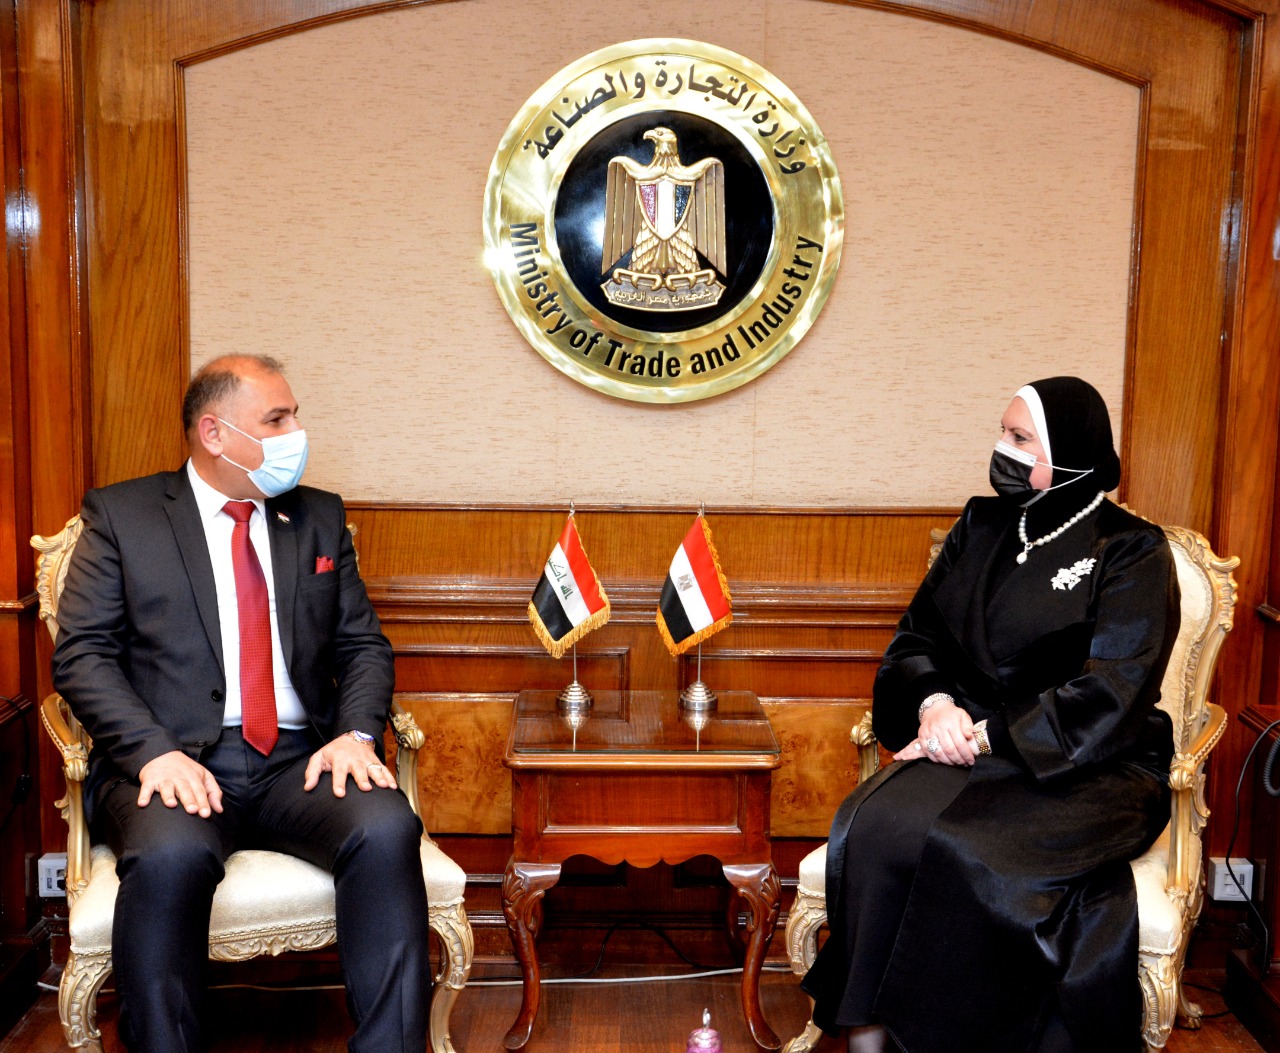   نيفين جامع: اهتمام كبير من القيادة السياسية والحكومة المصرية للمساهمة في إعادة إعمار العراق